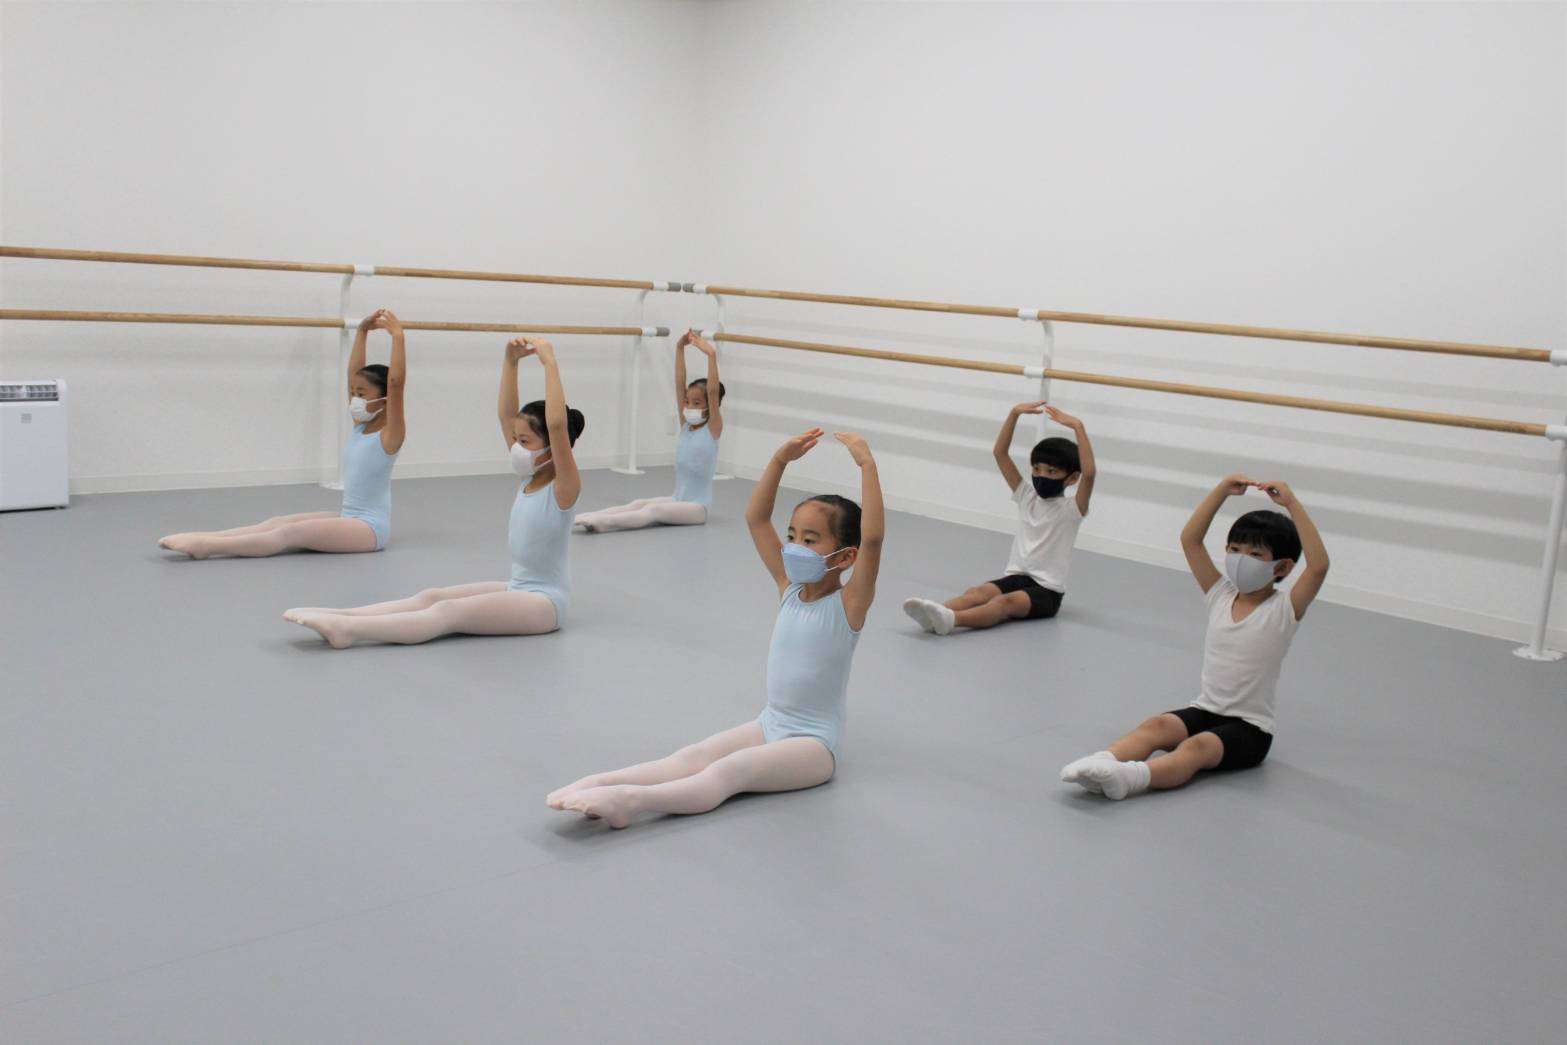 様々な能力を導き出すバレエ教室として世田谷区で開講 、指導中